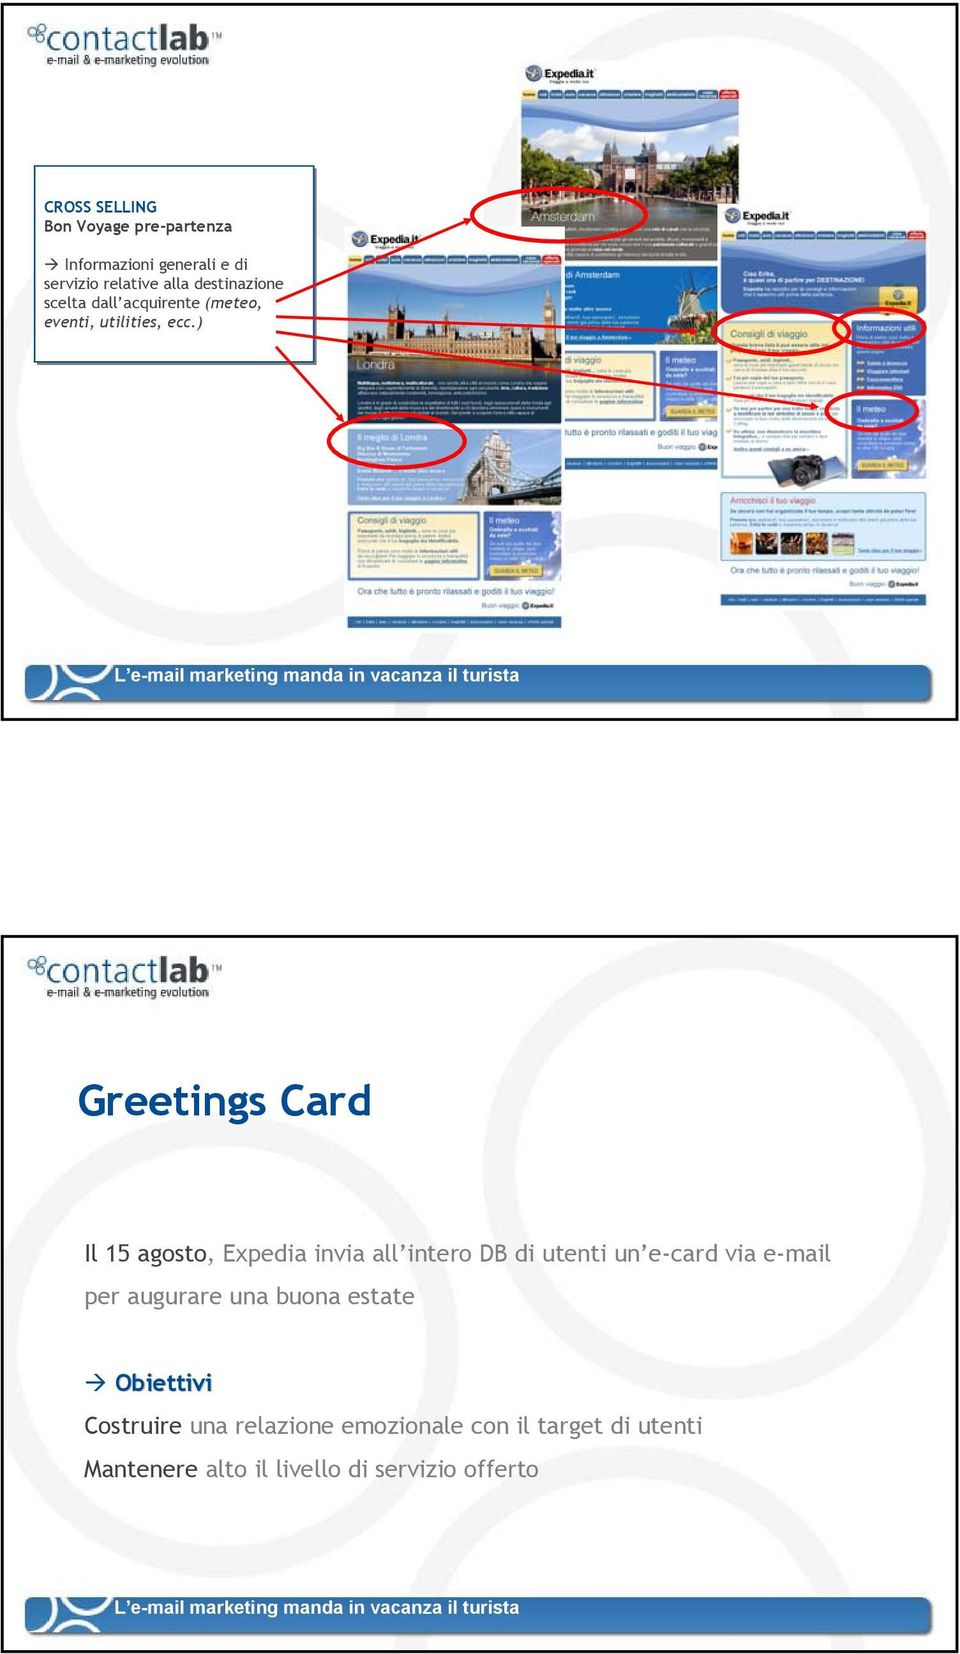 ) Greetings Card Il 15 agosto, Expedia invia all intero DB di utenti un e-card via e-mail per